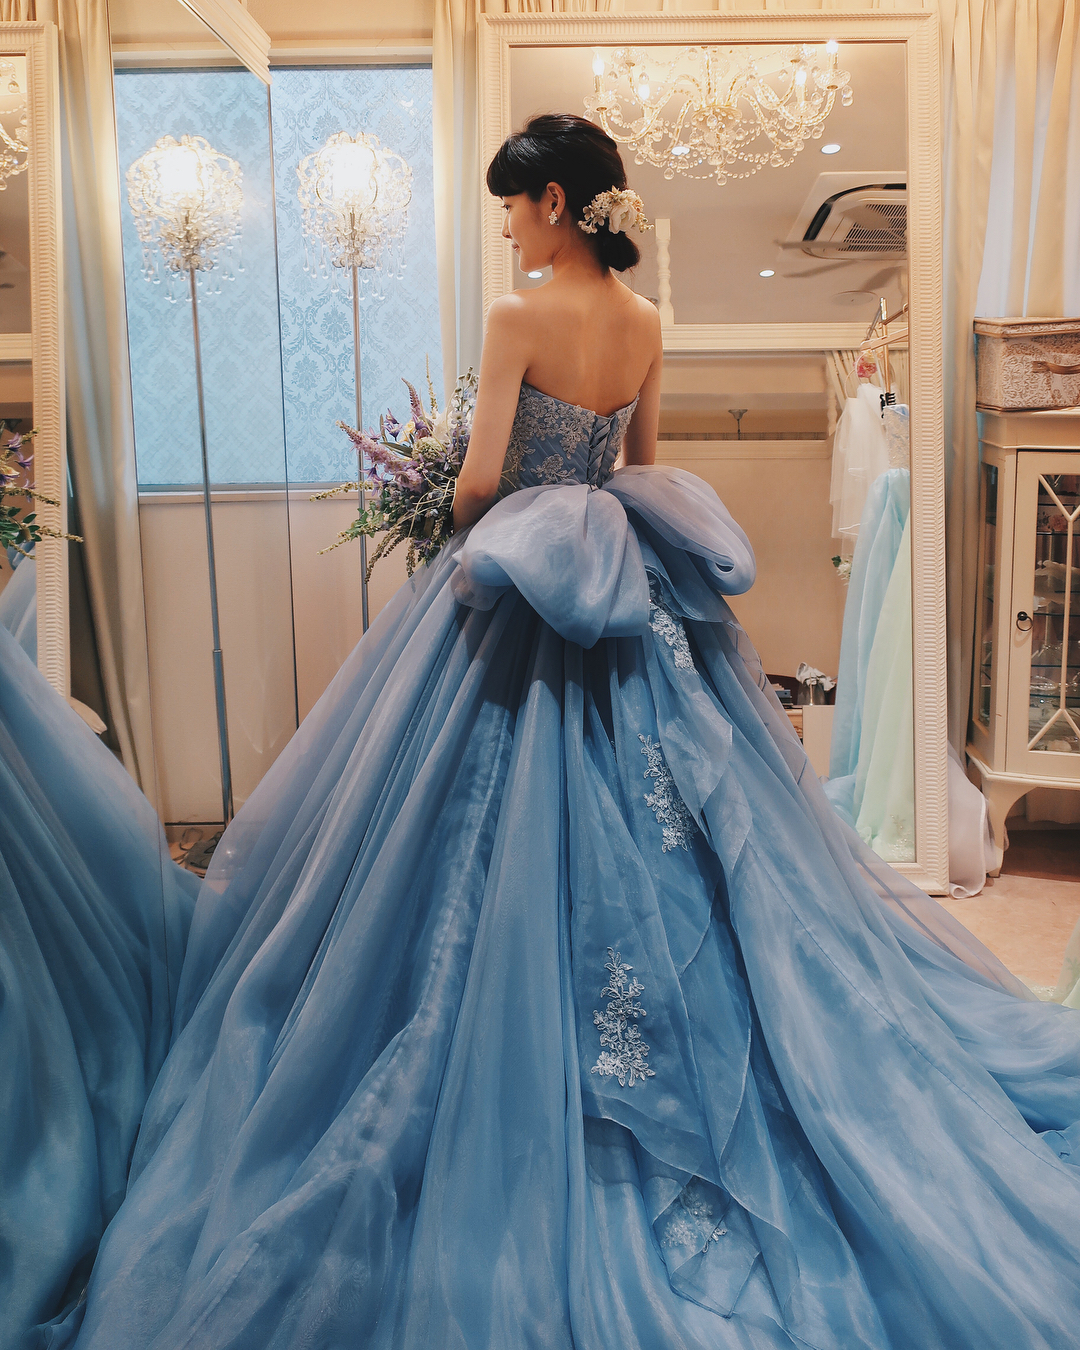 大人の愛らしさがコンセプトのウェディングドレス “Cinderella & Co 